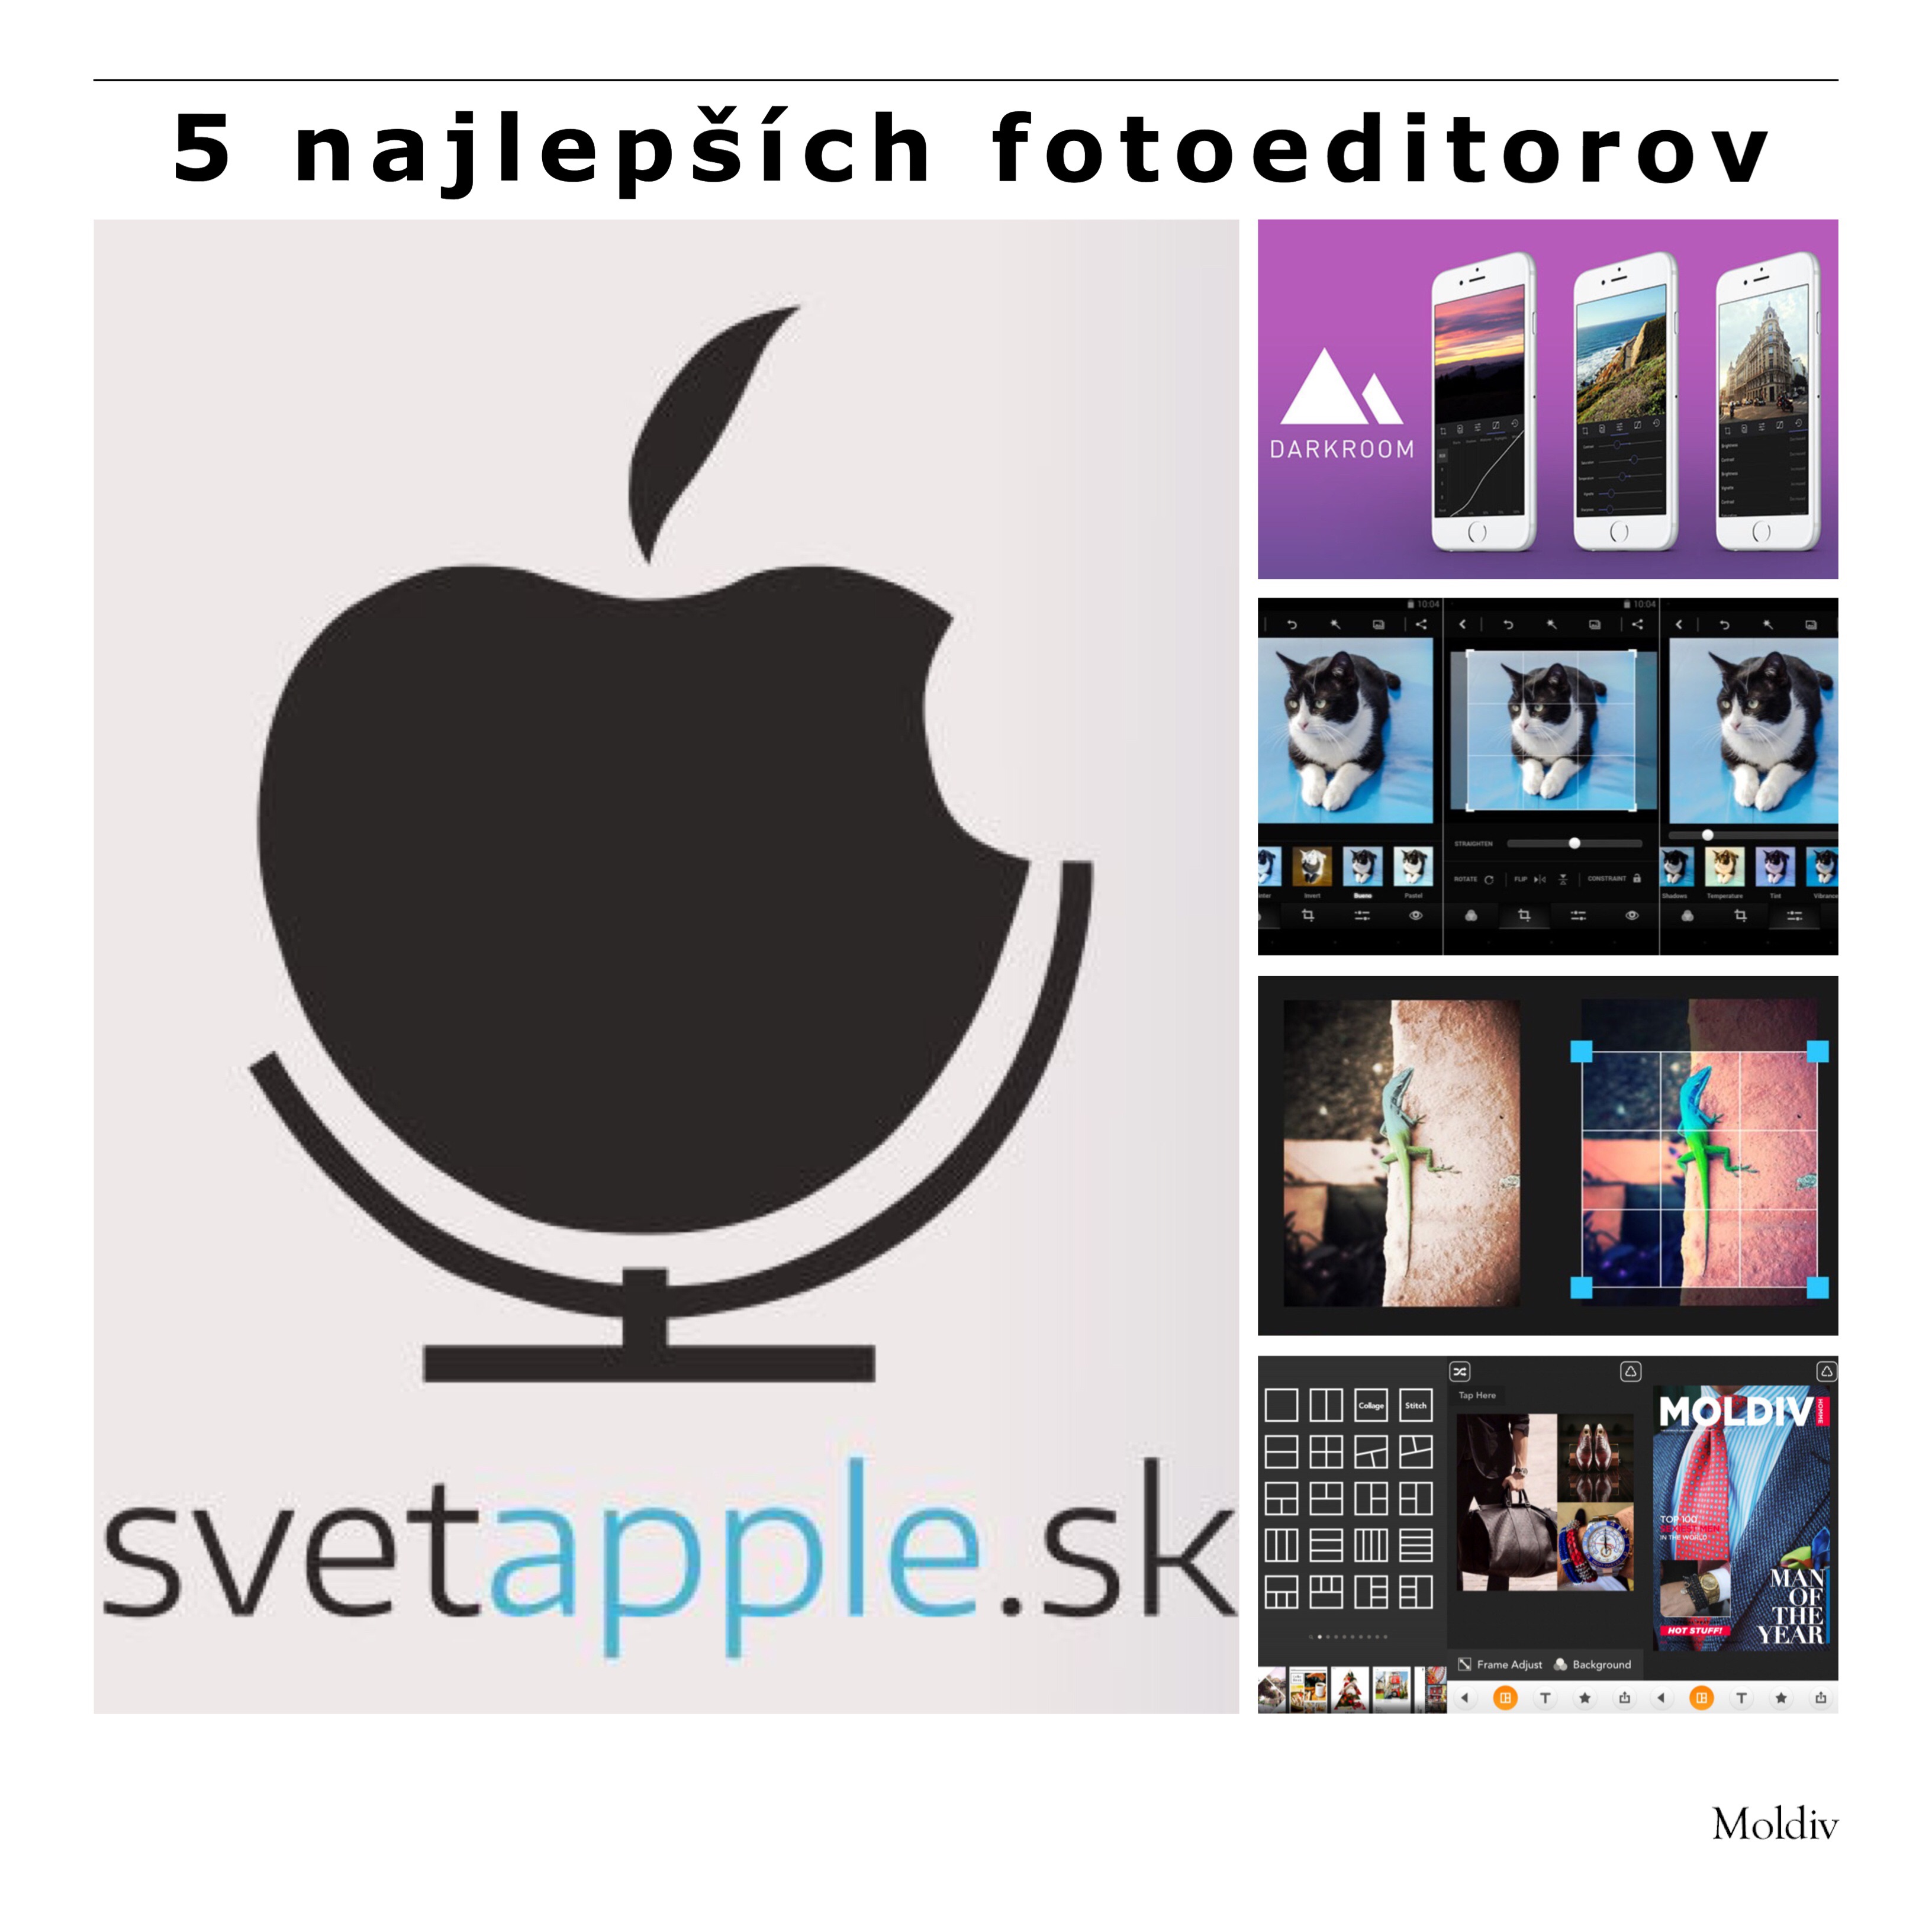 5 najlepších fotoeditorov - svetapple.sk